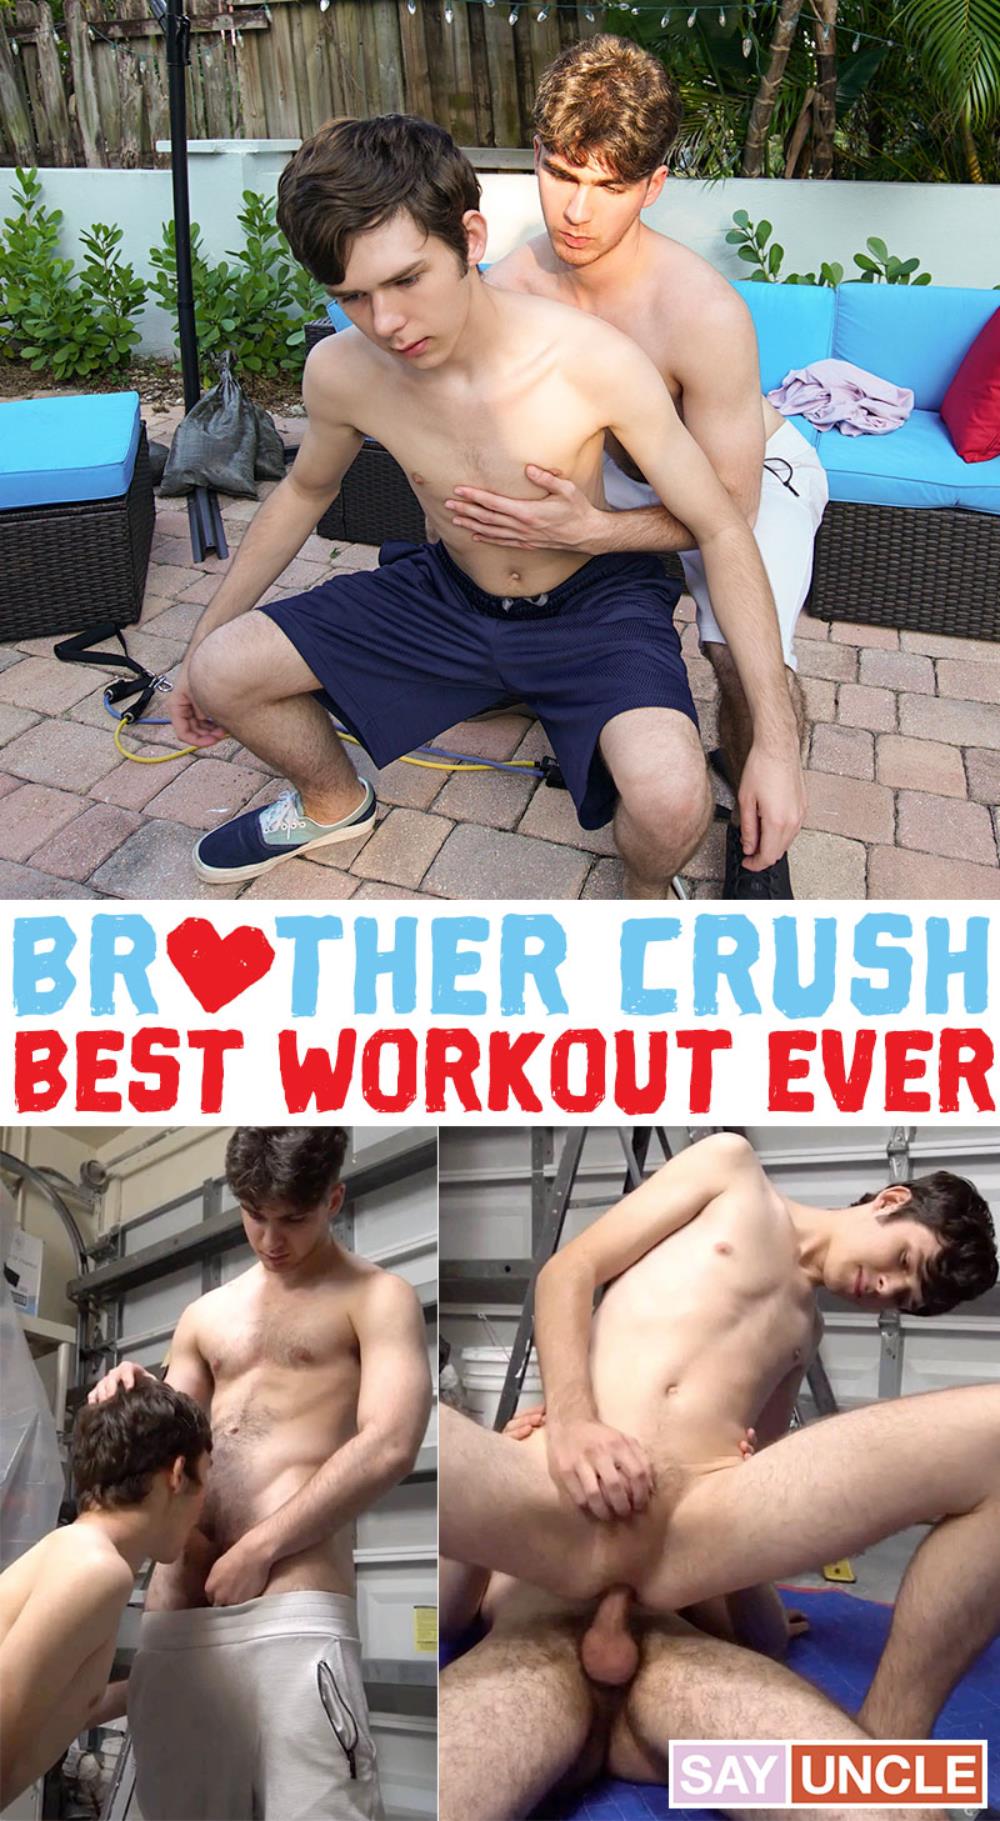 BrotherCrush – Best Workout Ever – Daniel Dean, Dakota Lovell